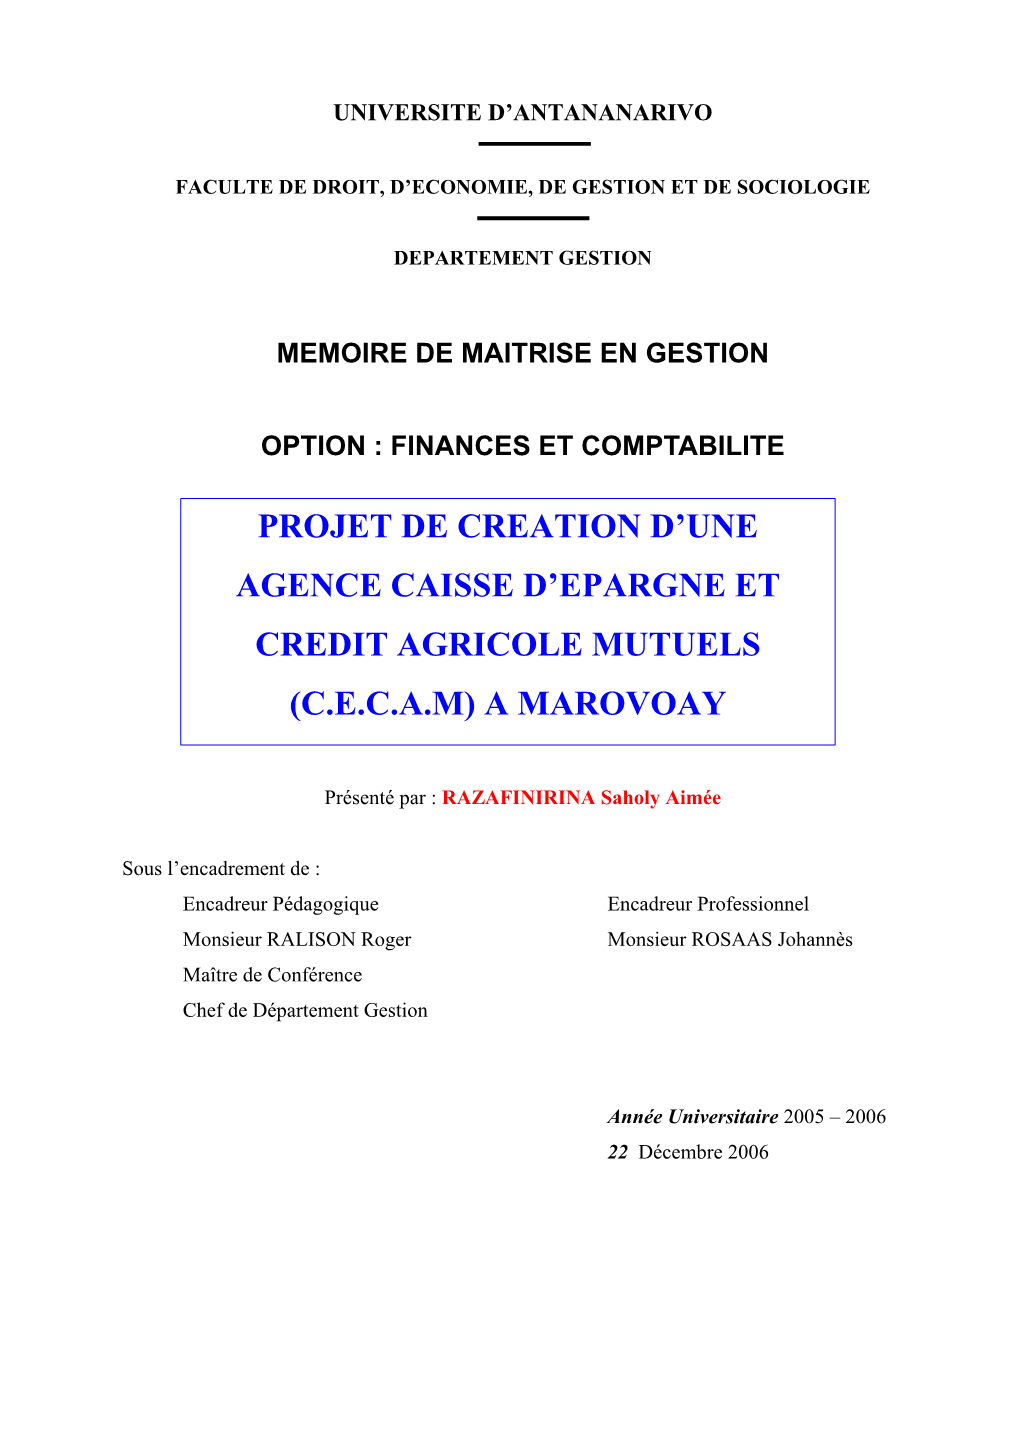 Projet De Creation D'une Agence Caisse D'epargne Et Credit Agricole Mutuels (C.E.C.A.M) a Marovoay